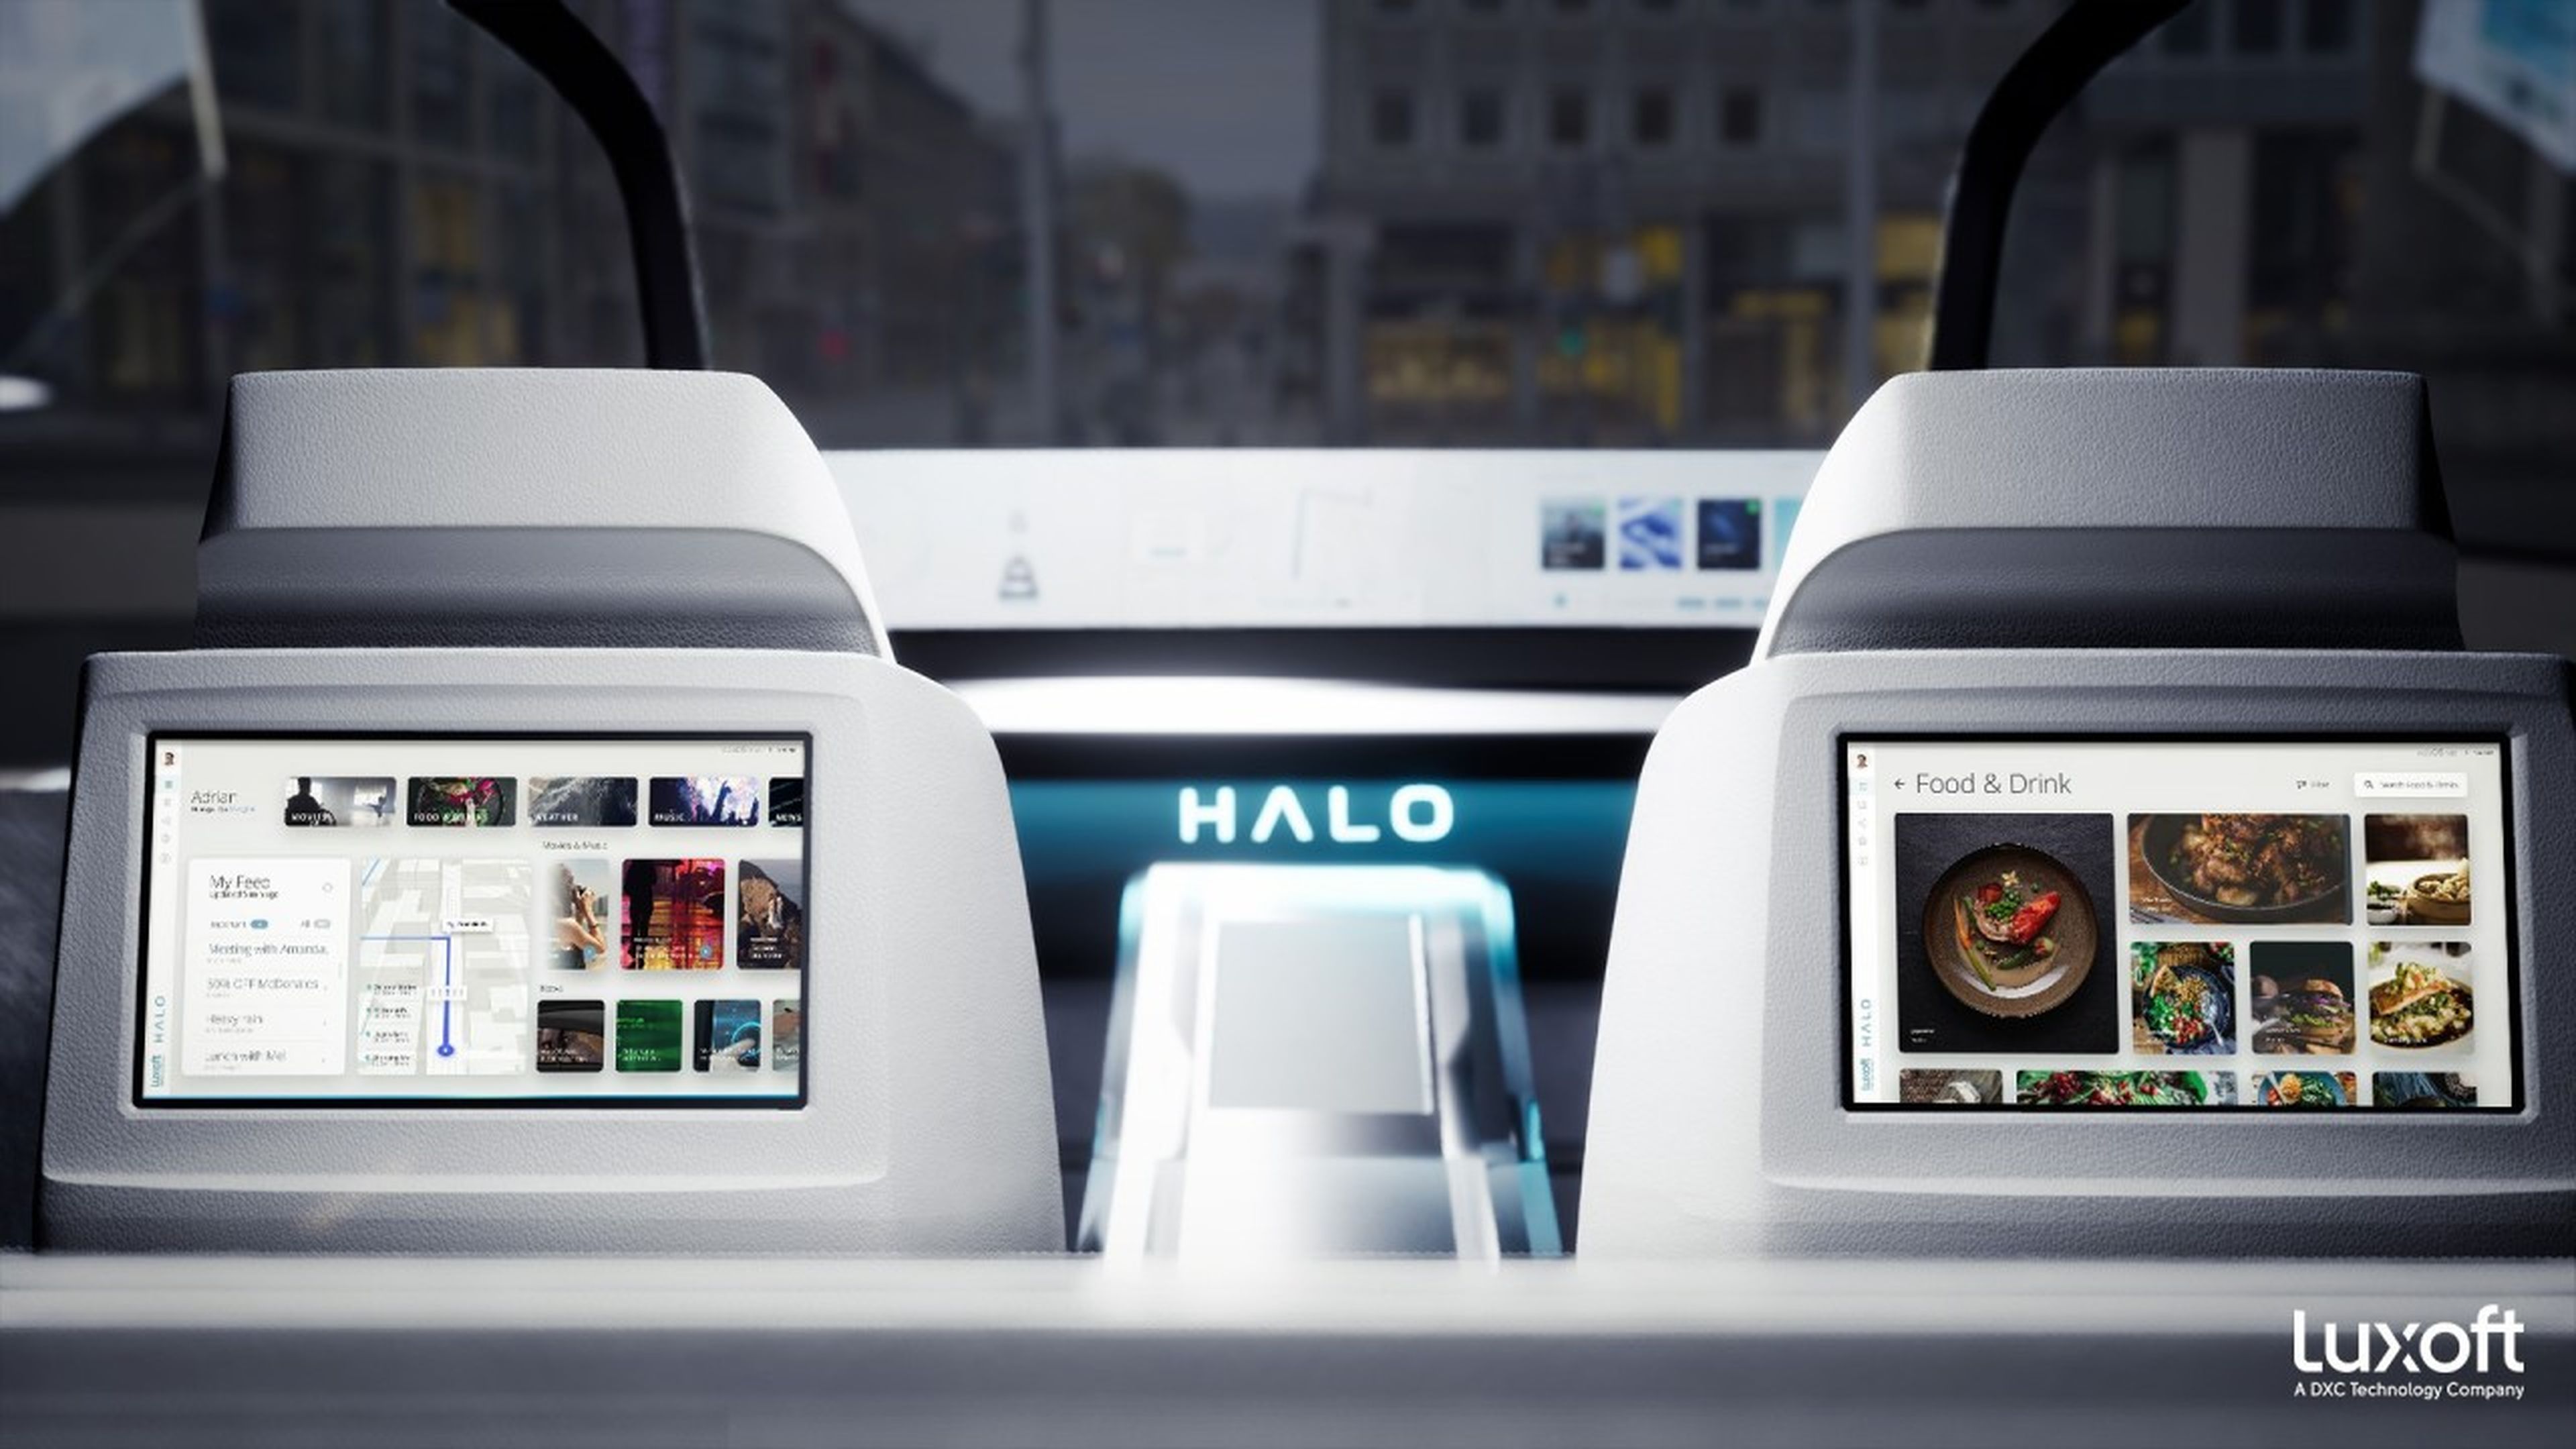 Luxoft HALO Concept teaser